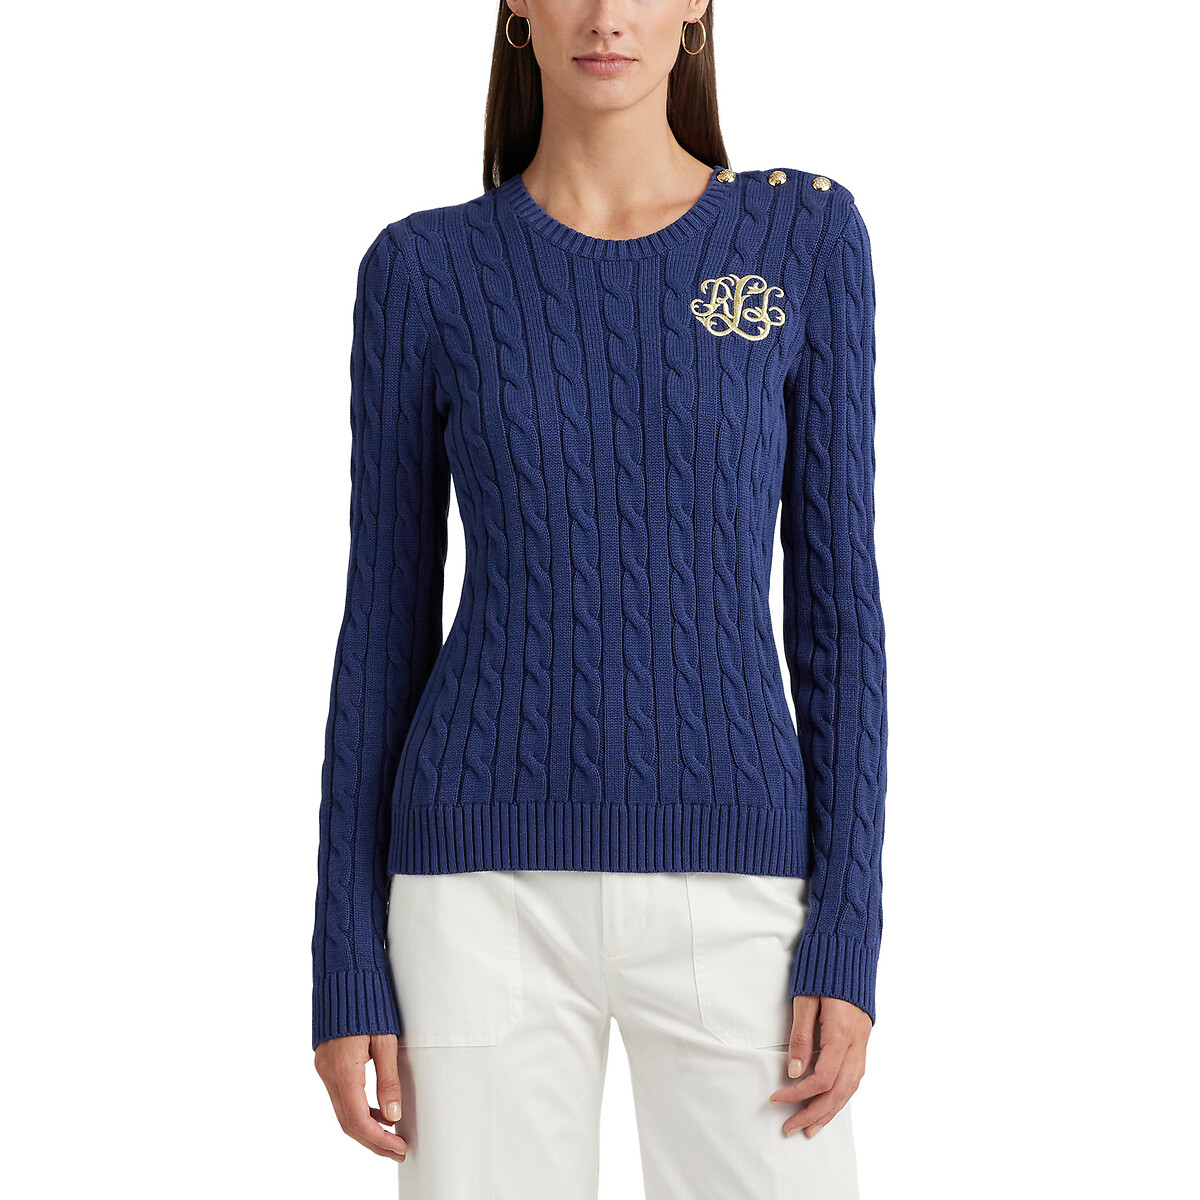 Пуловер с круглым вырезом из витого трикотажа MONTIVA XS синий пуловер с короткими рукавами из витого трикотажа l розовый